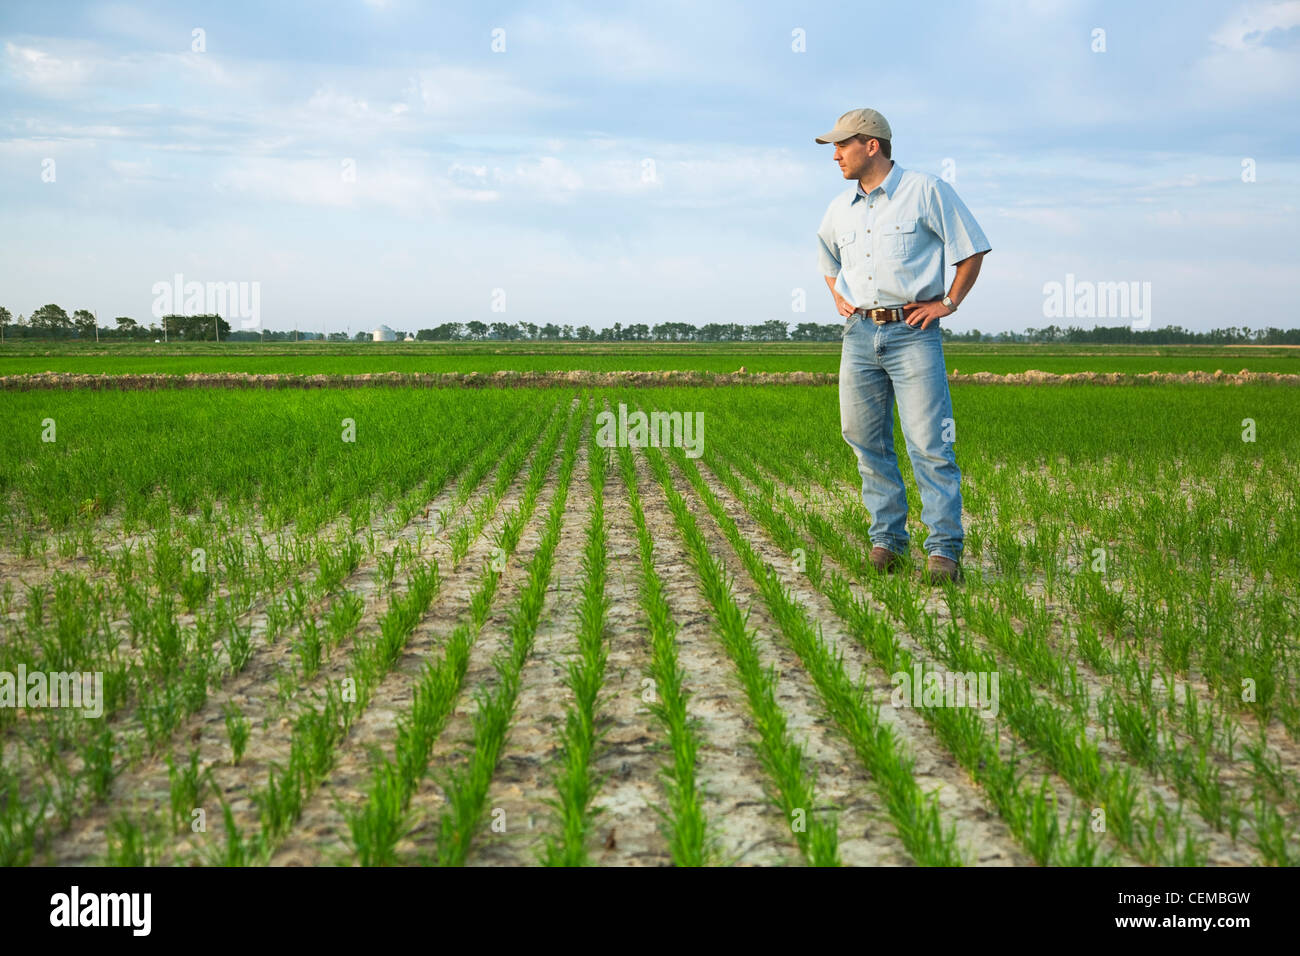 Agricoltura - un agricoltore (coltivatore) in piedi nel suo campo di ispezionare i progressi della sua crescita precoce del raccolto di riso / Arkansas, Stati Uniti d'America. Foto Stock